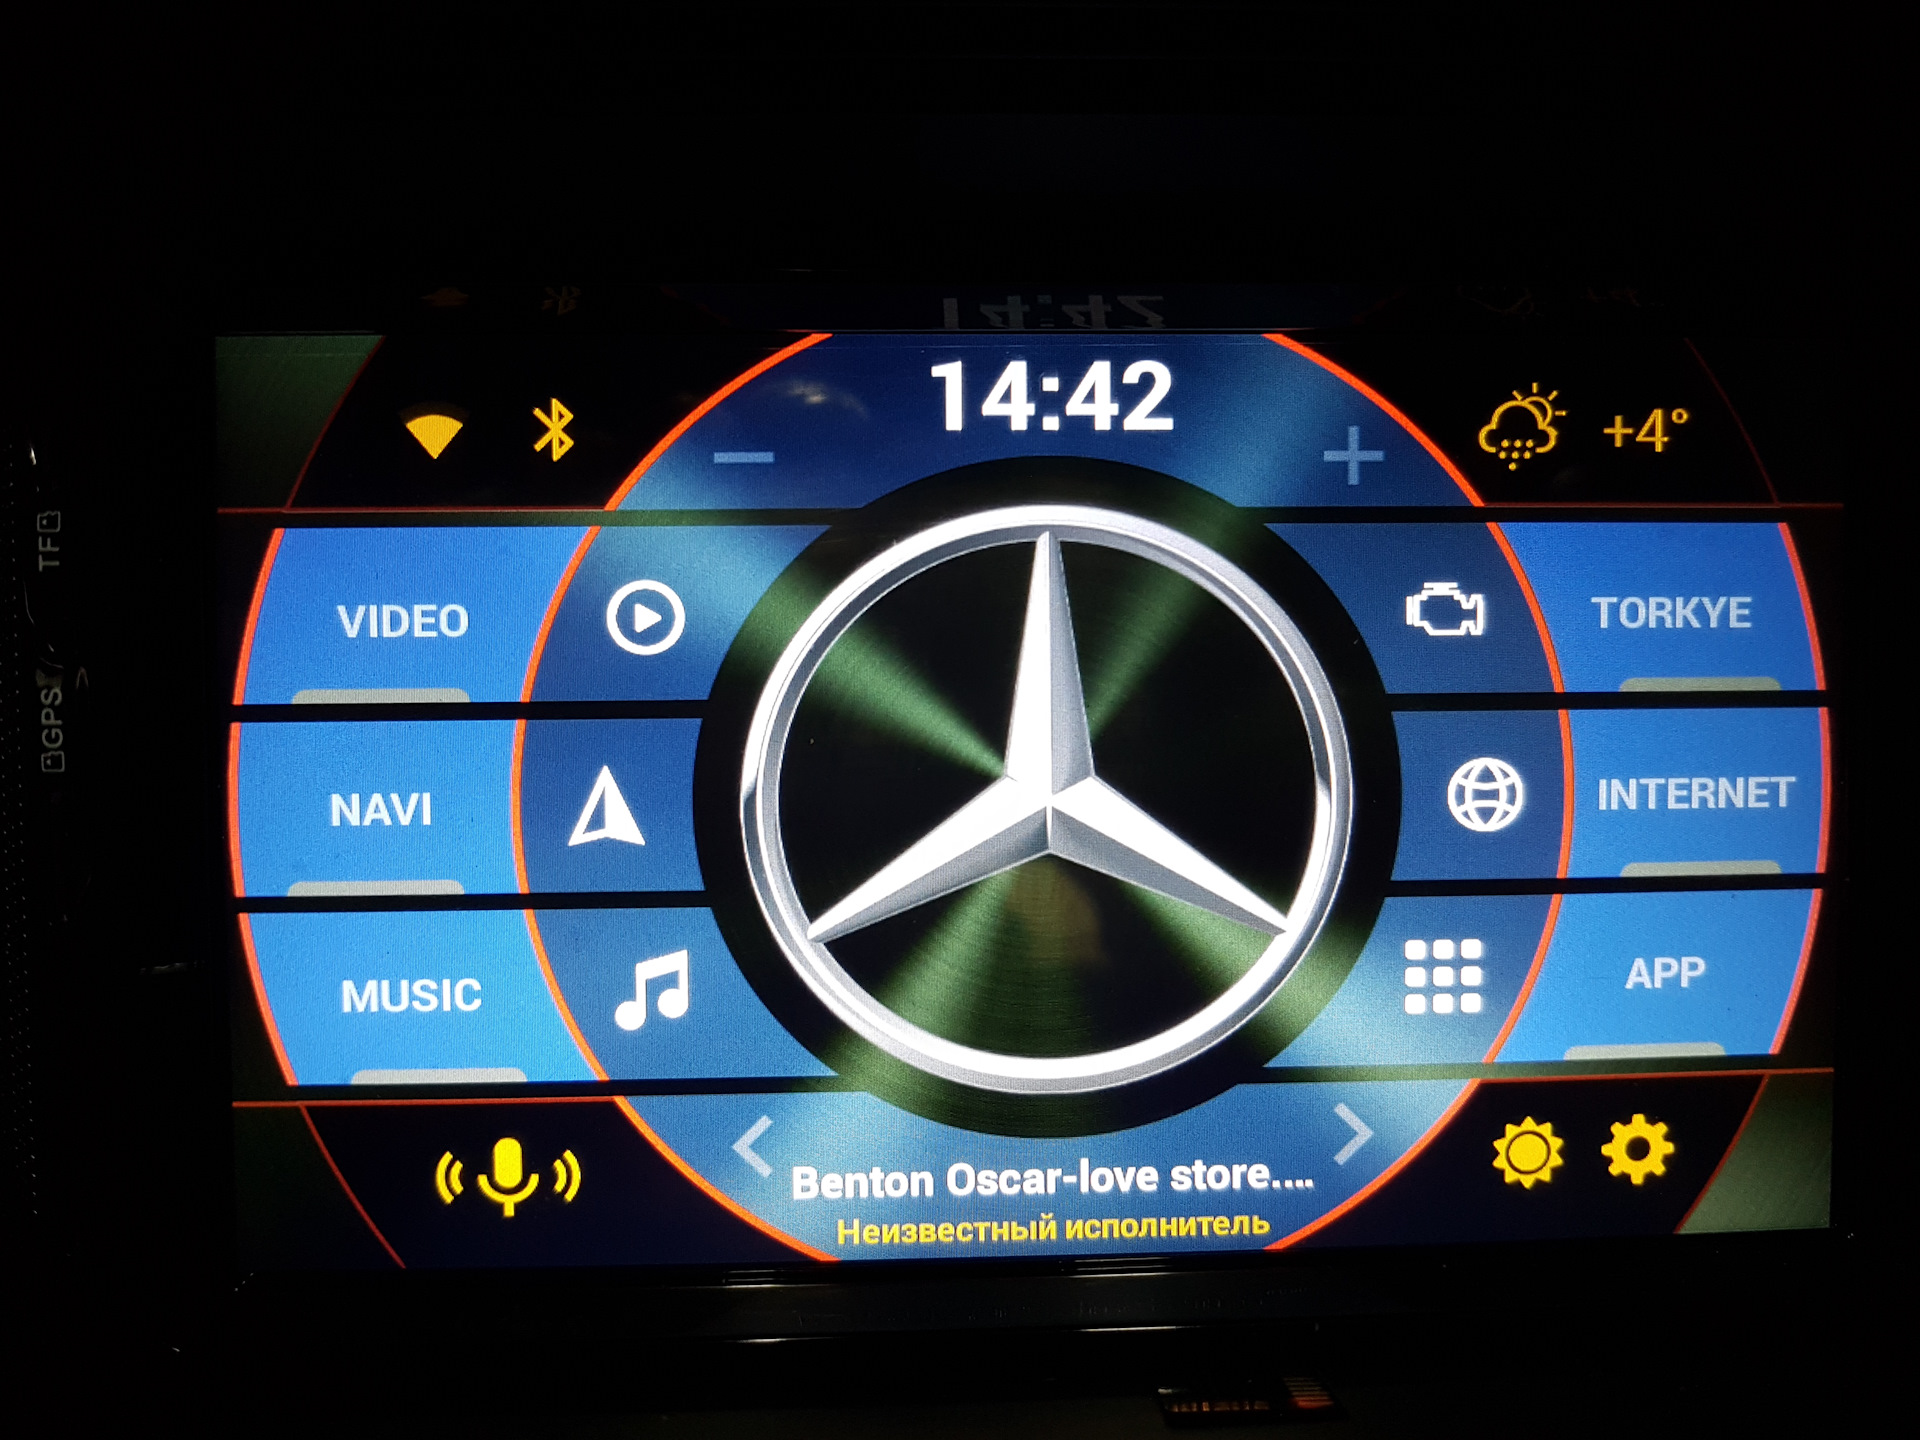 Как установить логотип авто на андроиде. Лаунчер Mercedes для андроид магнитолы. Launcher для андроид магнитолы Volkswagen Passat. GLK x204 магнитола андроид. Лаунчер для автомобиля Опель.